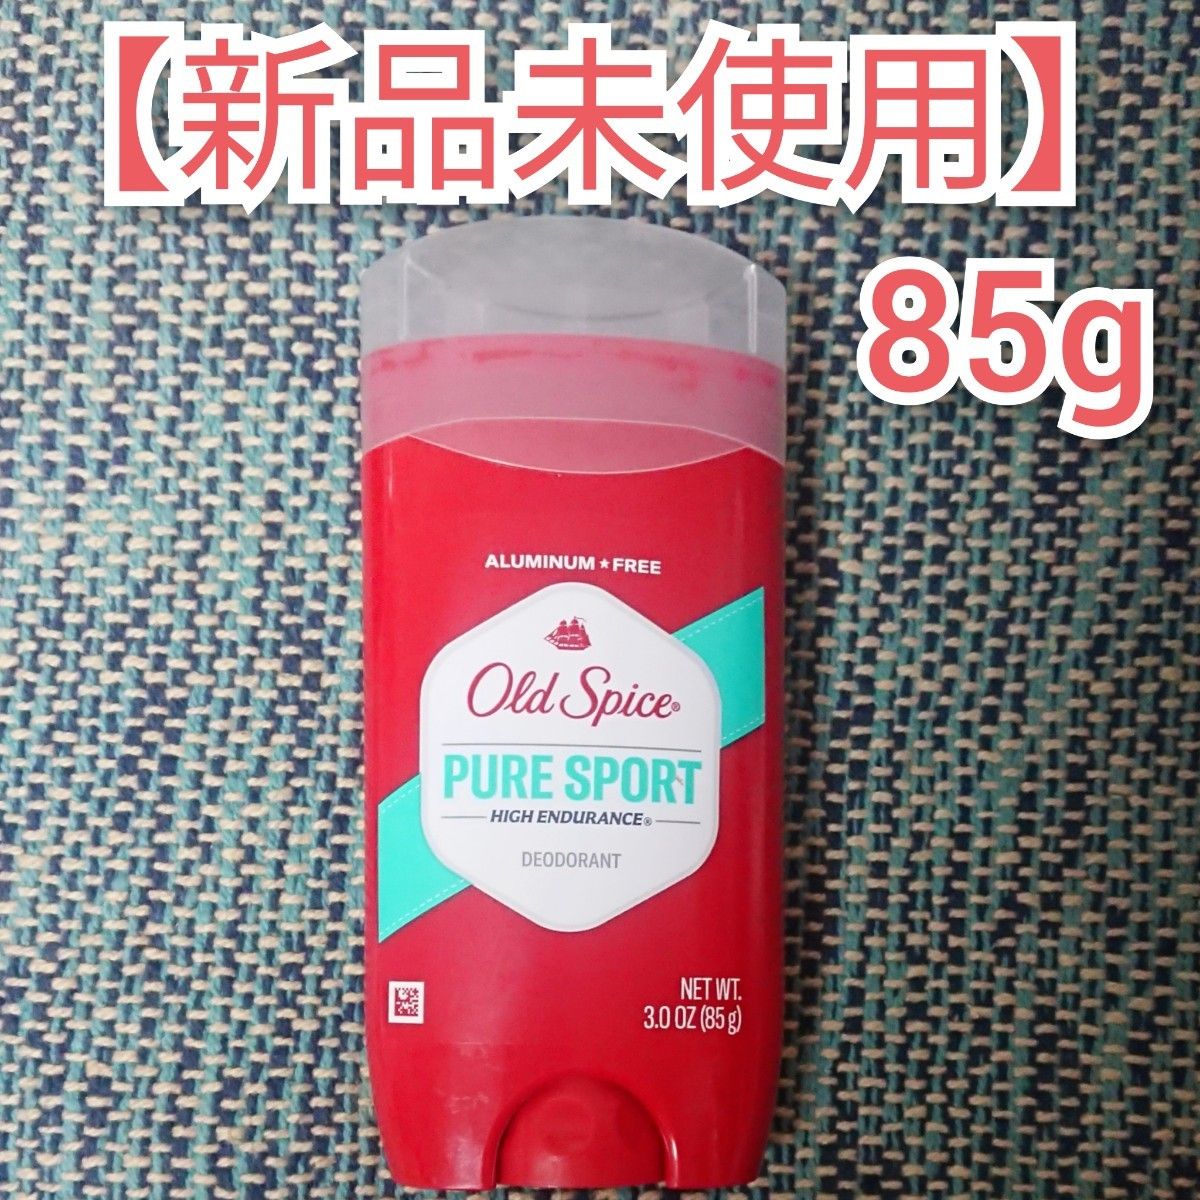 オールドスパイス ピュアスポーツ デオドラント 新品 未使用 未開封 Old Spice 85g  大容量 制汗剤 